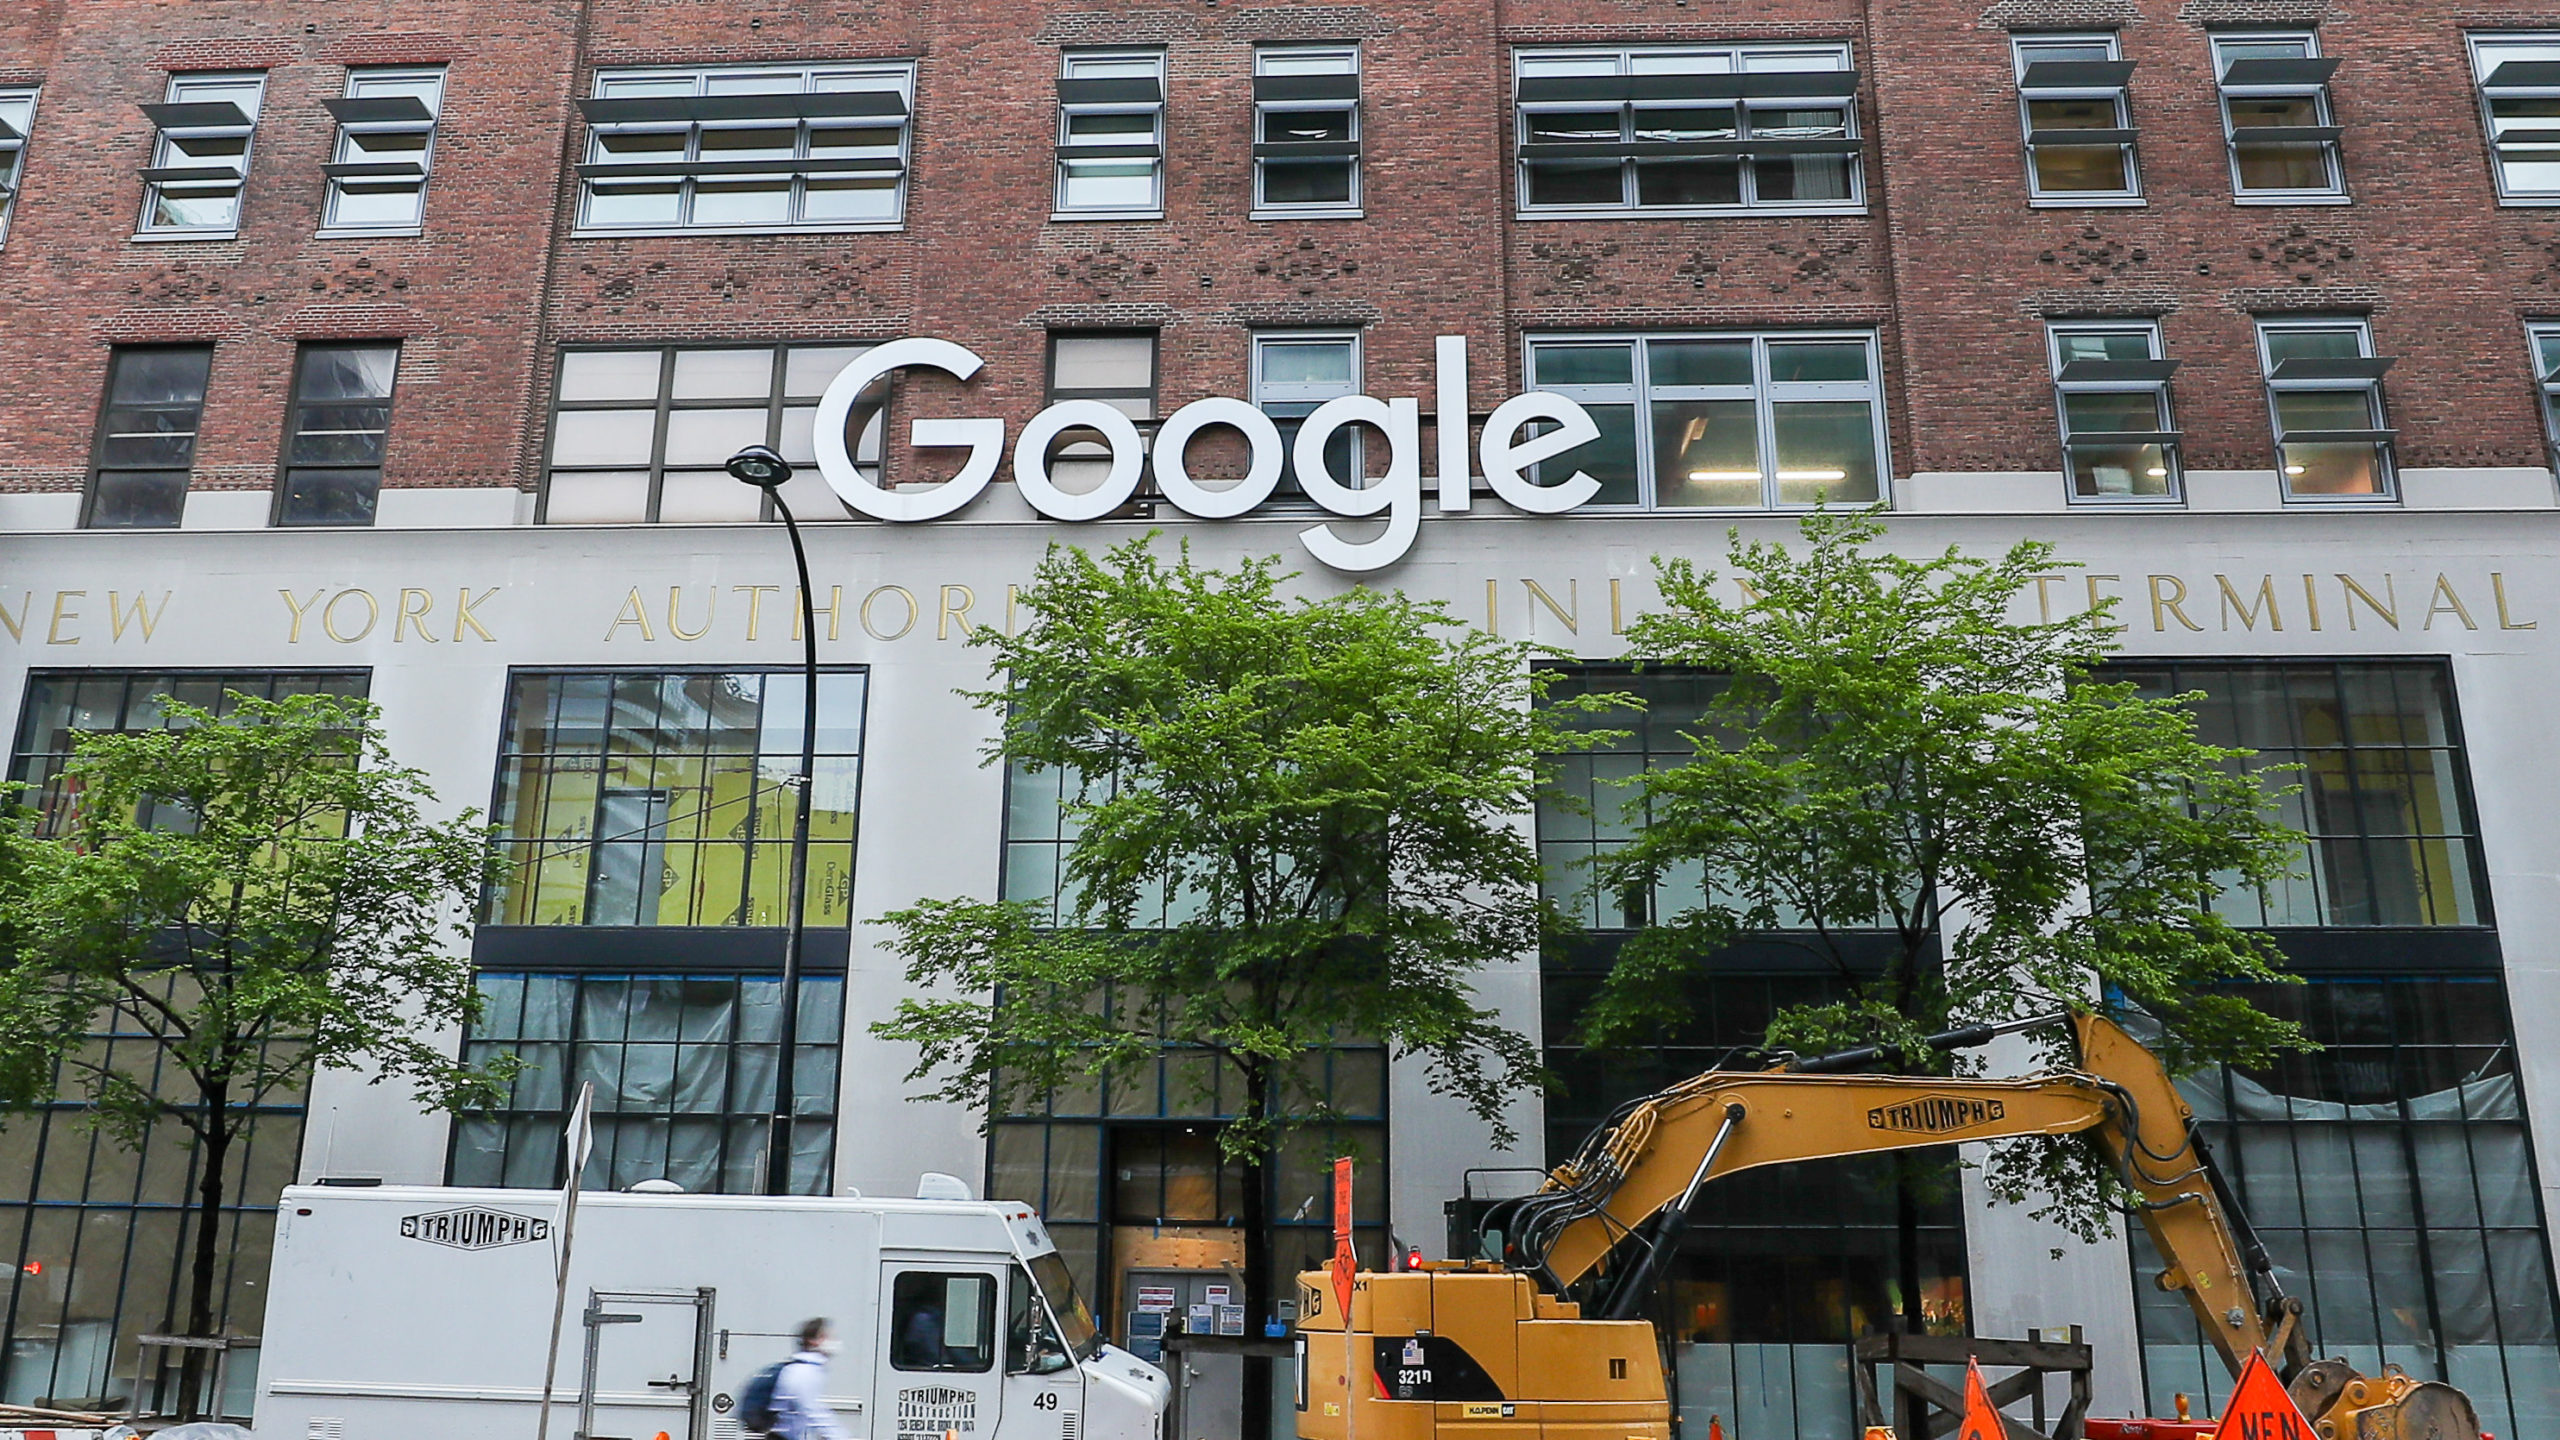 Escritório do Google em Nova York. Crédito: Arturo Holmes/Getty Images